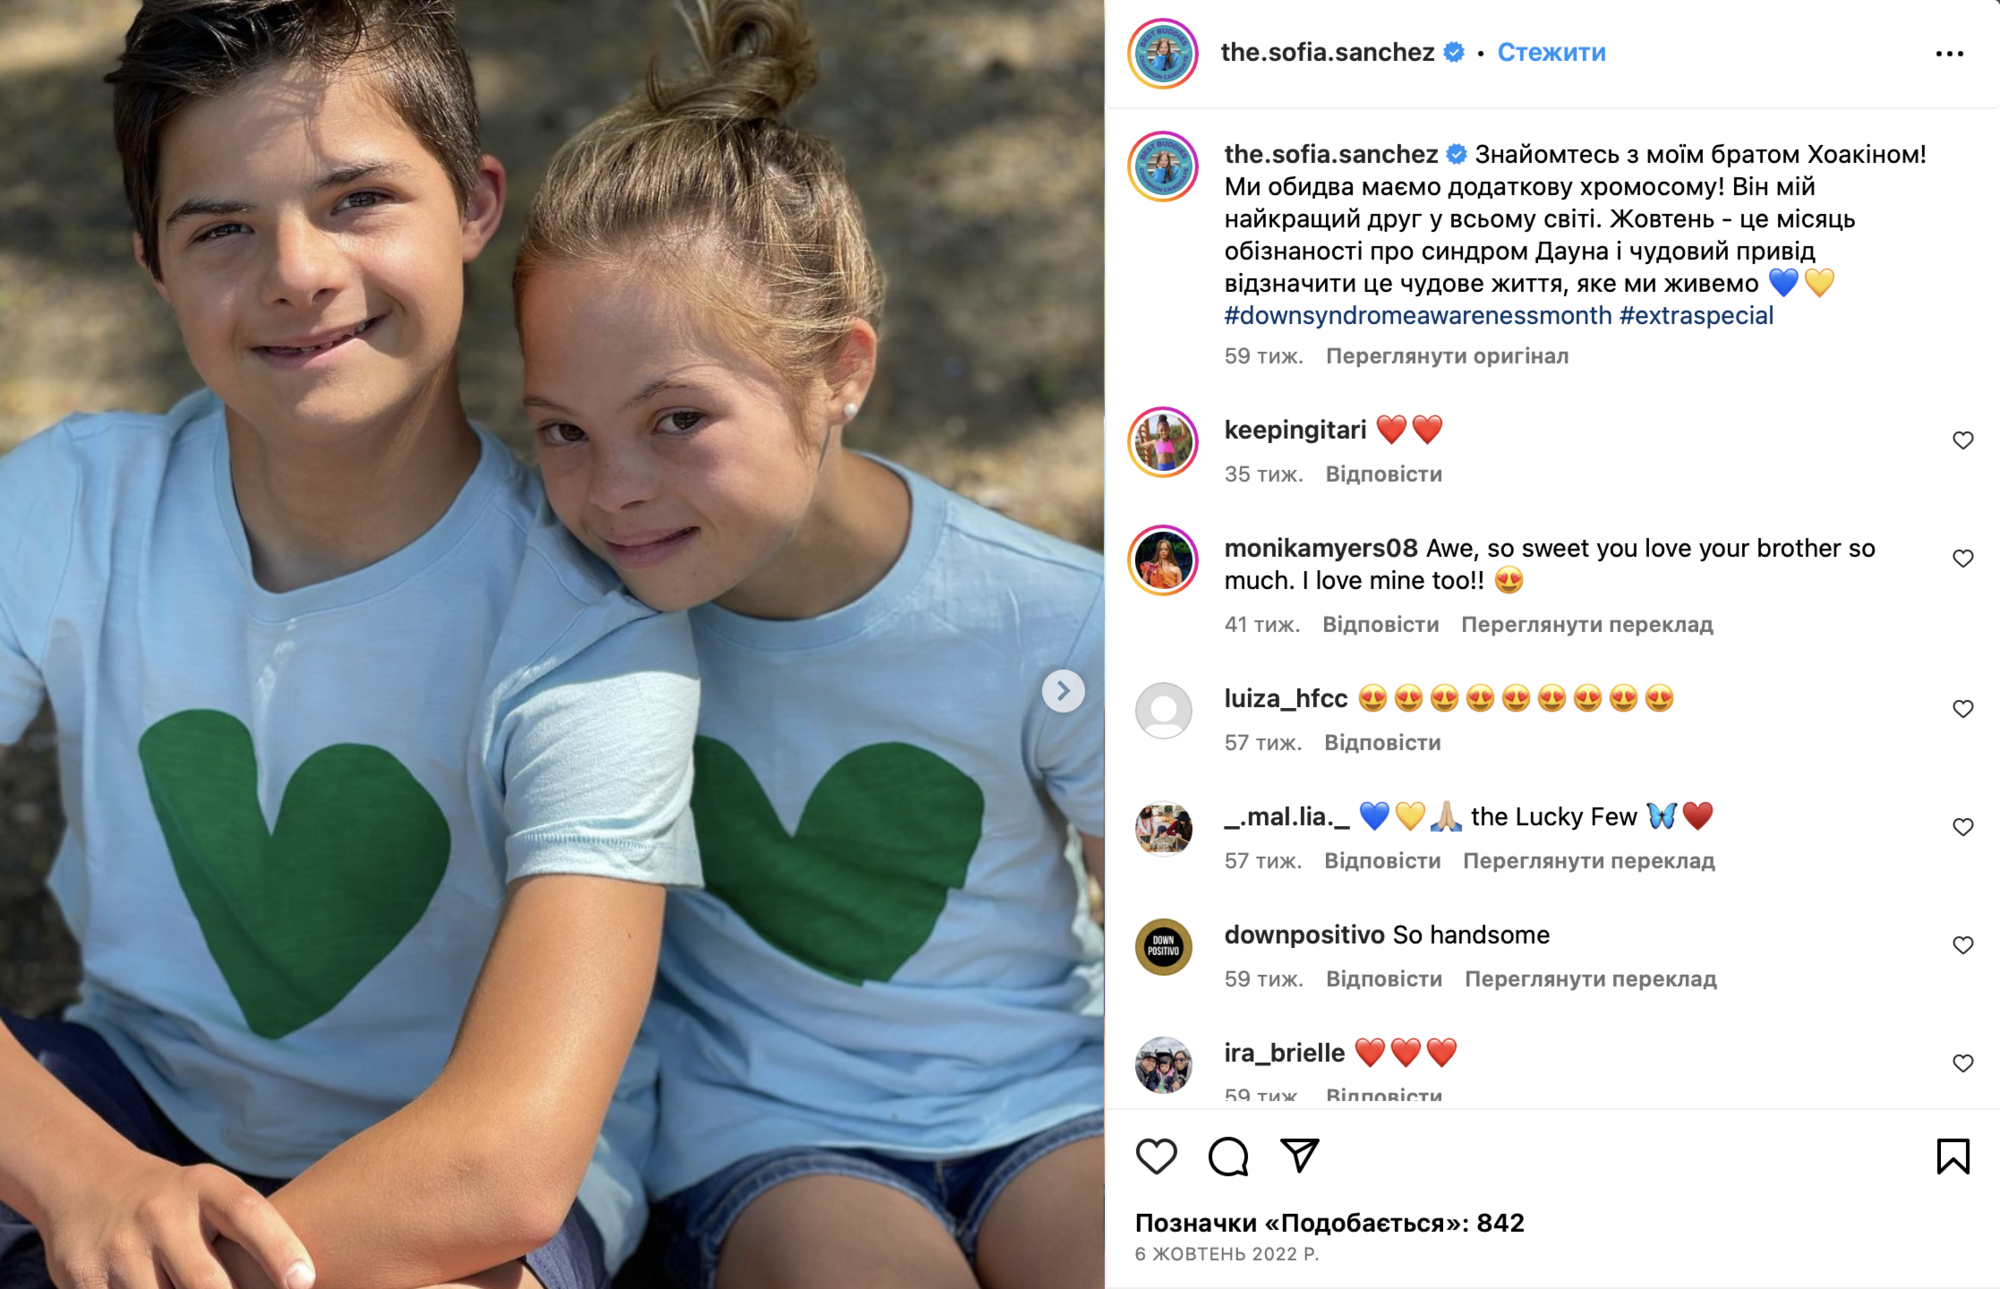 Młoda gwiazda Igrzysk śmierci i Barbie z zespołem Downa okazała się Ukrainką: co o niej wiadomo i jak wspiera swój ojczysty kraj